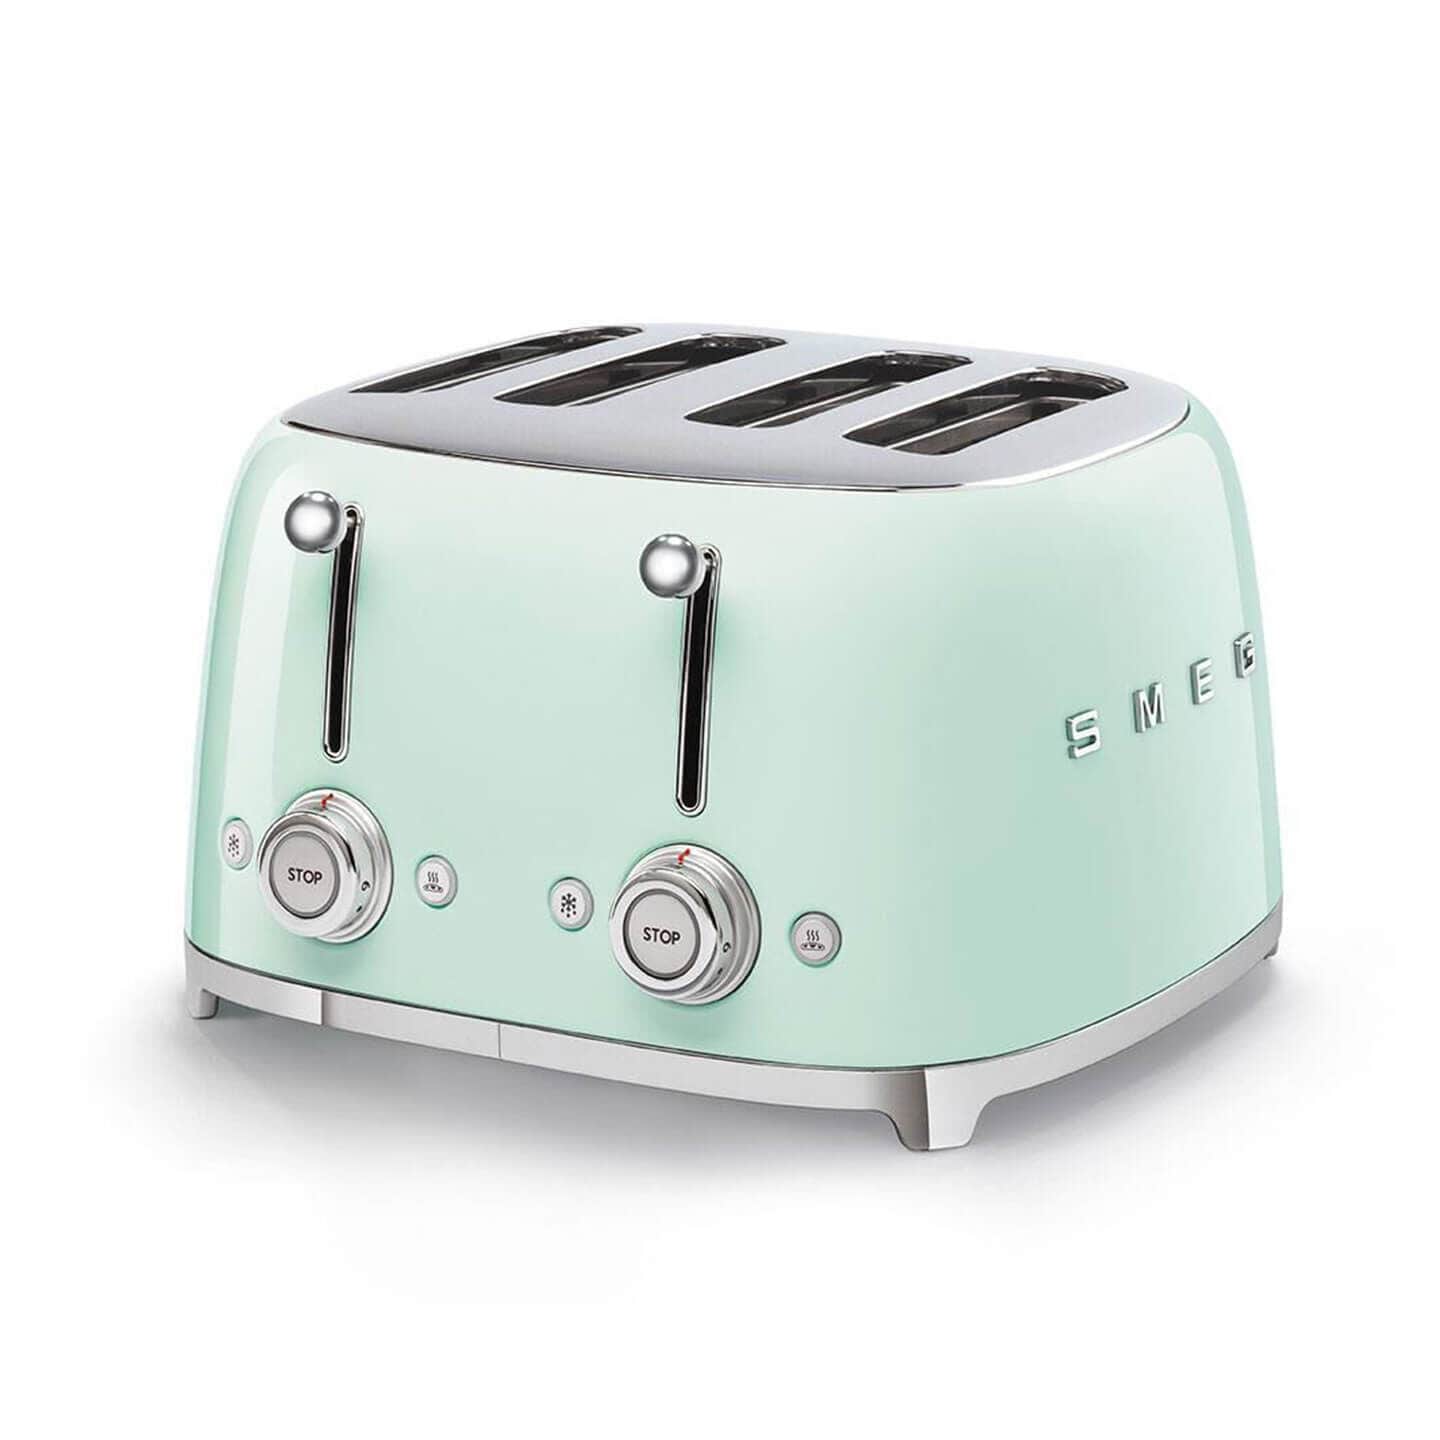  Smeg Retro Toaster in Green